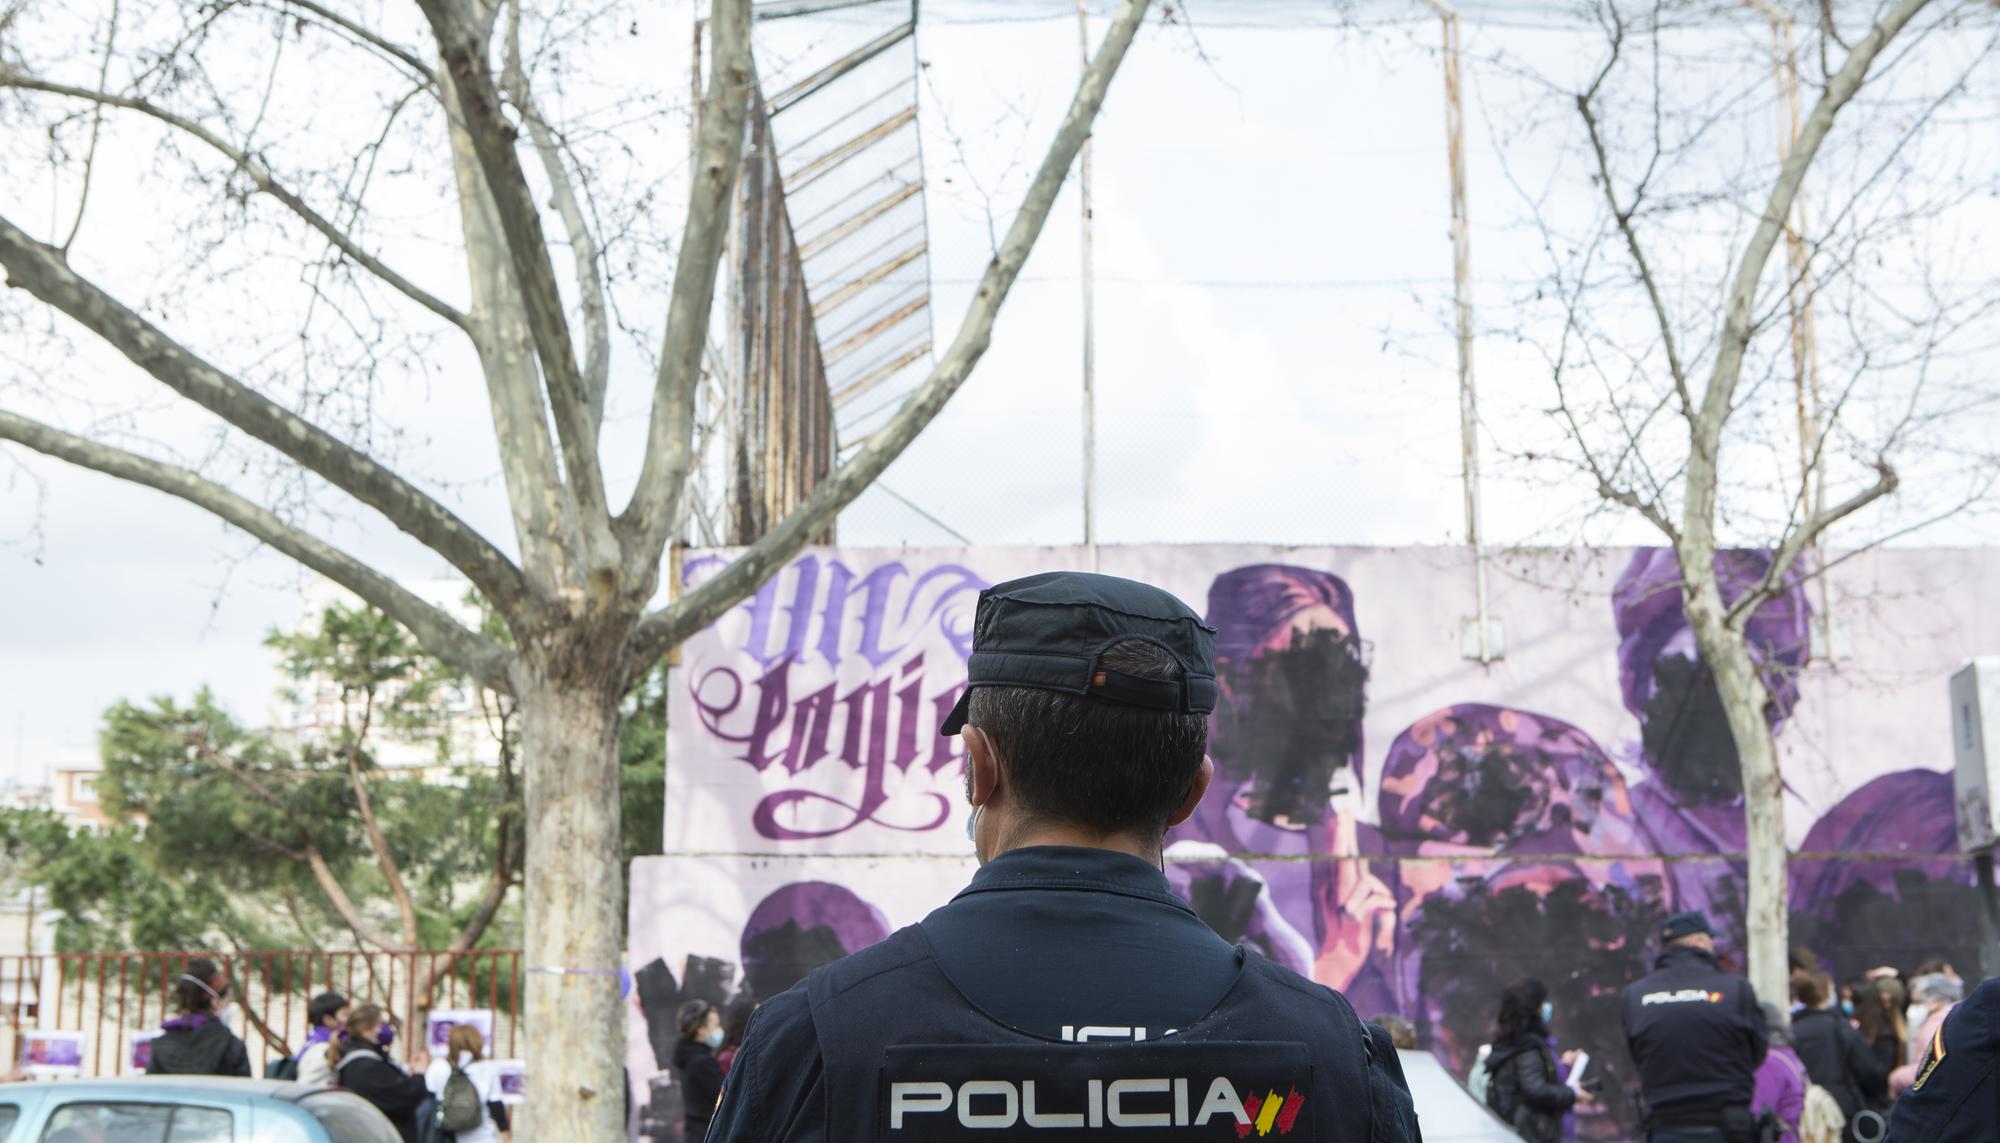 concentración frente al mural feminista vandalizado el 8M en Madrid - 5